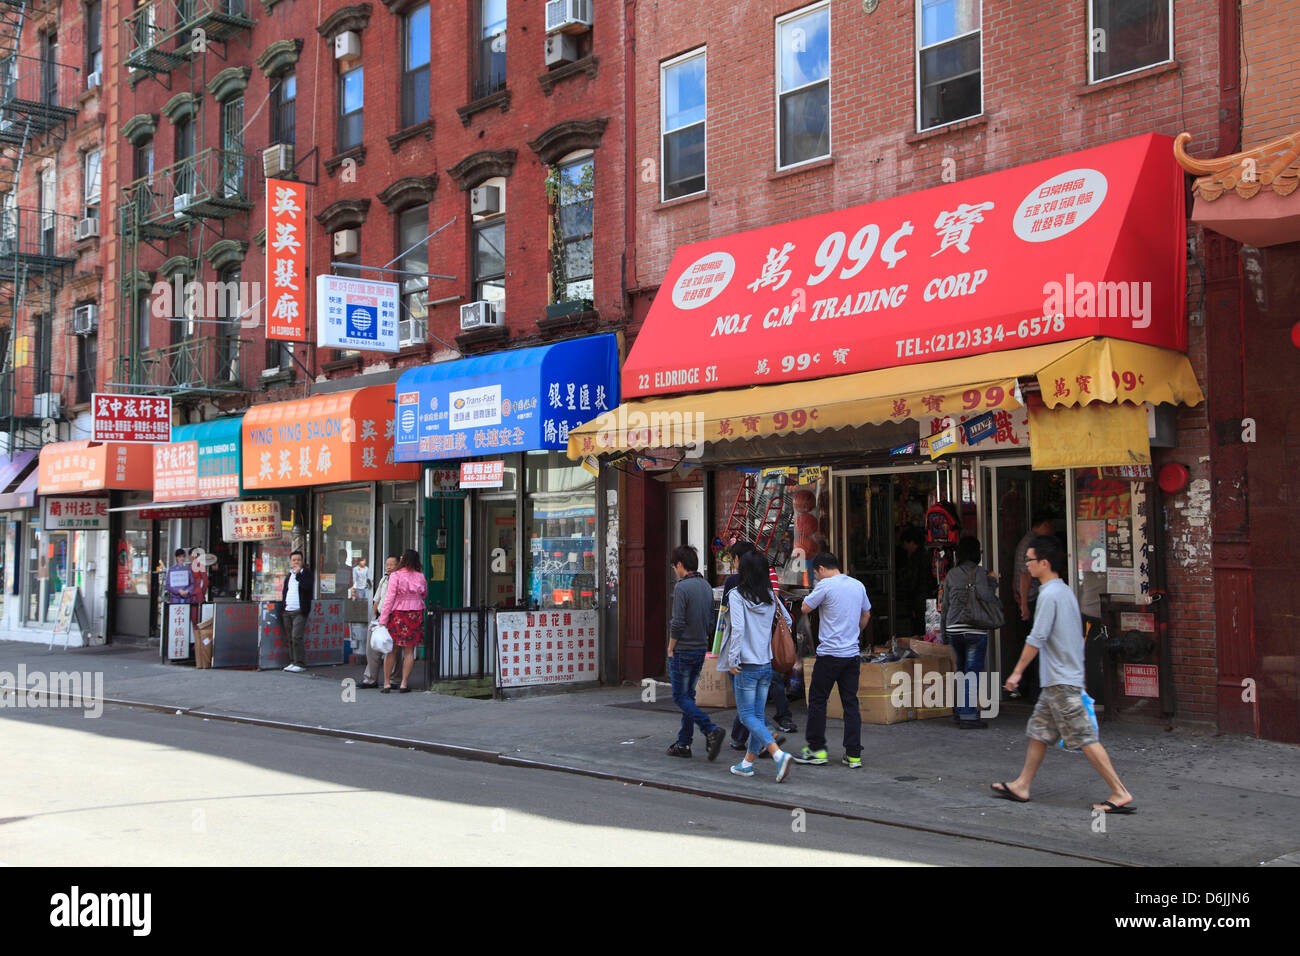 Street scene, Chinatown, Manhattan, New York  City, United States of America, North America Stock Photo